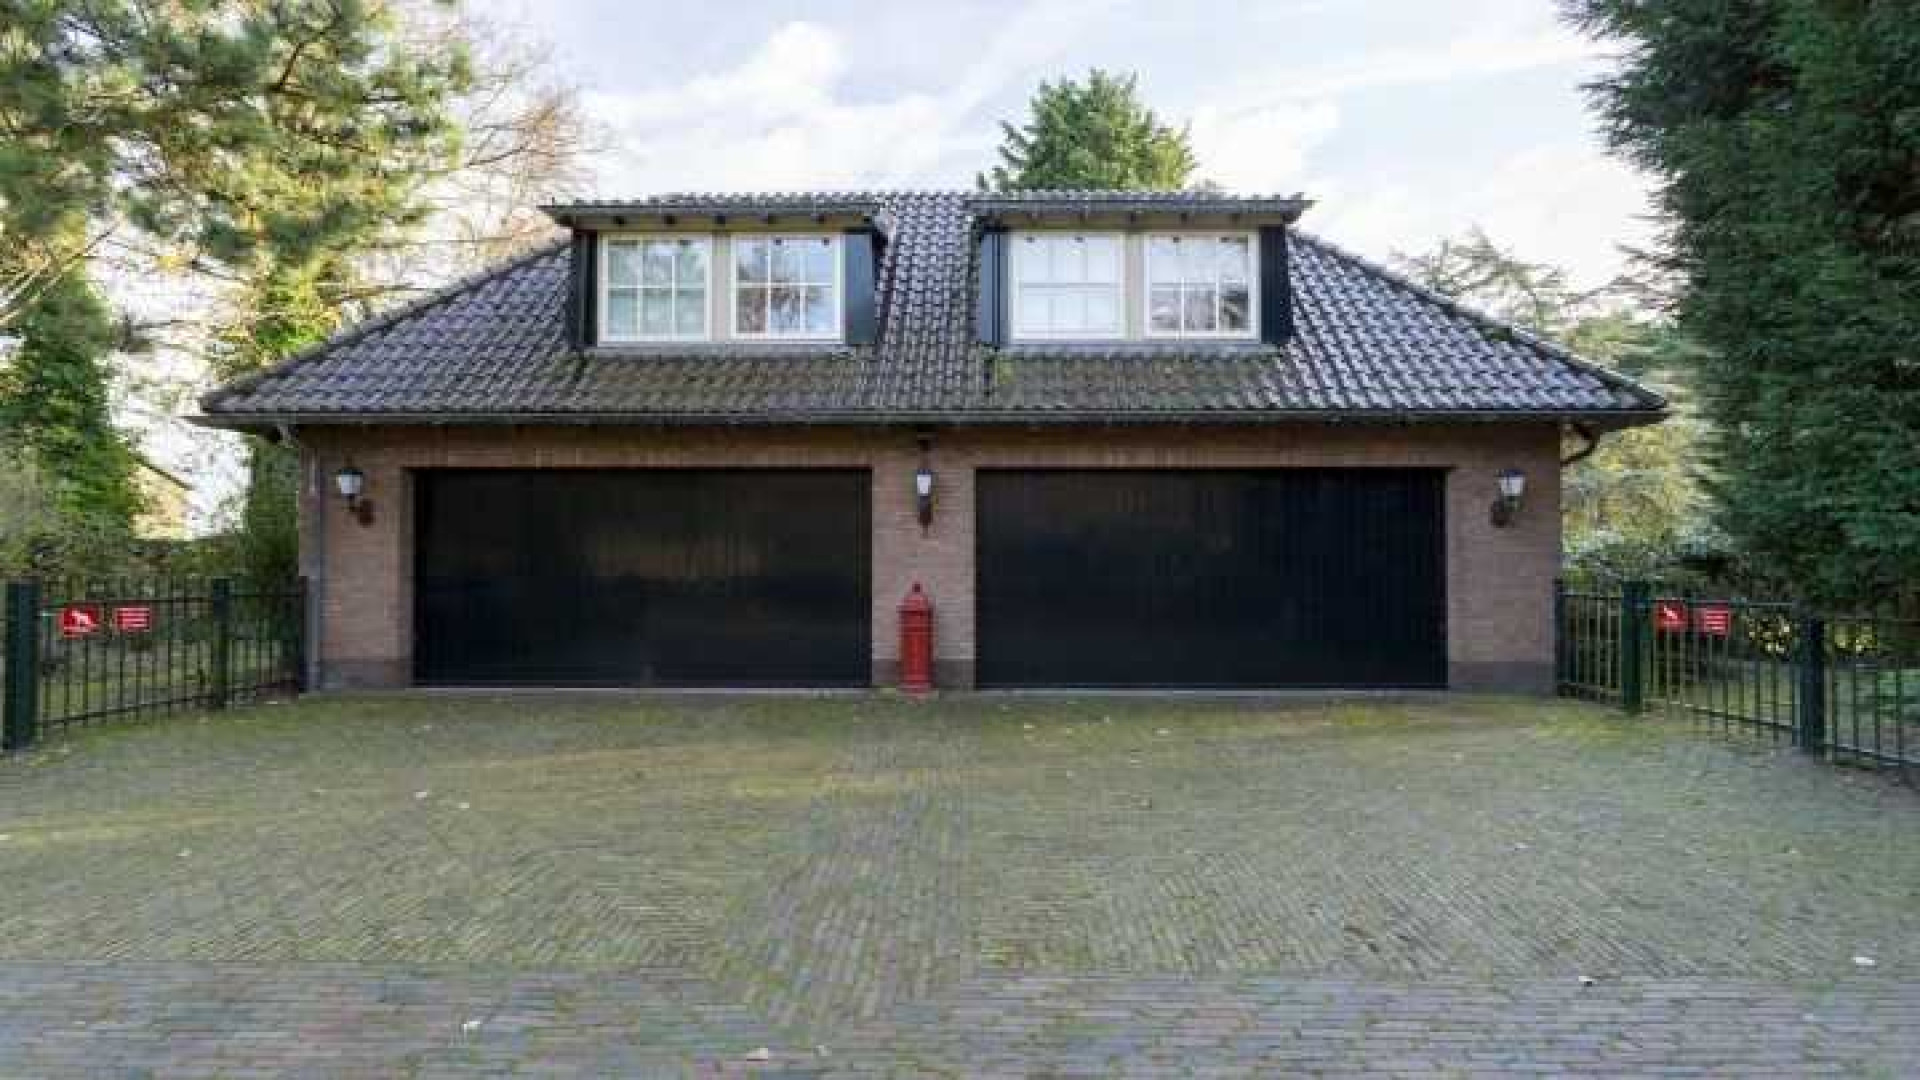 Binnenkijken in het totaal door ontwerper Piet Boon gerestylde huis van Henny Huisman. Zie foto's 47